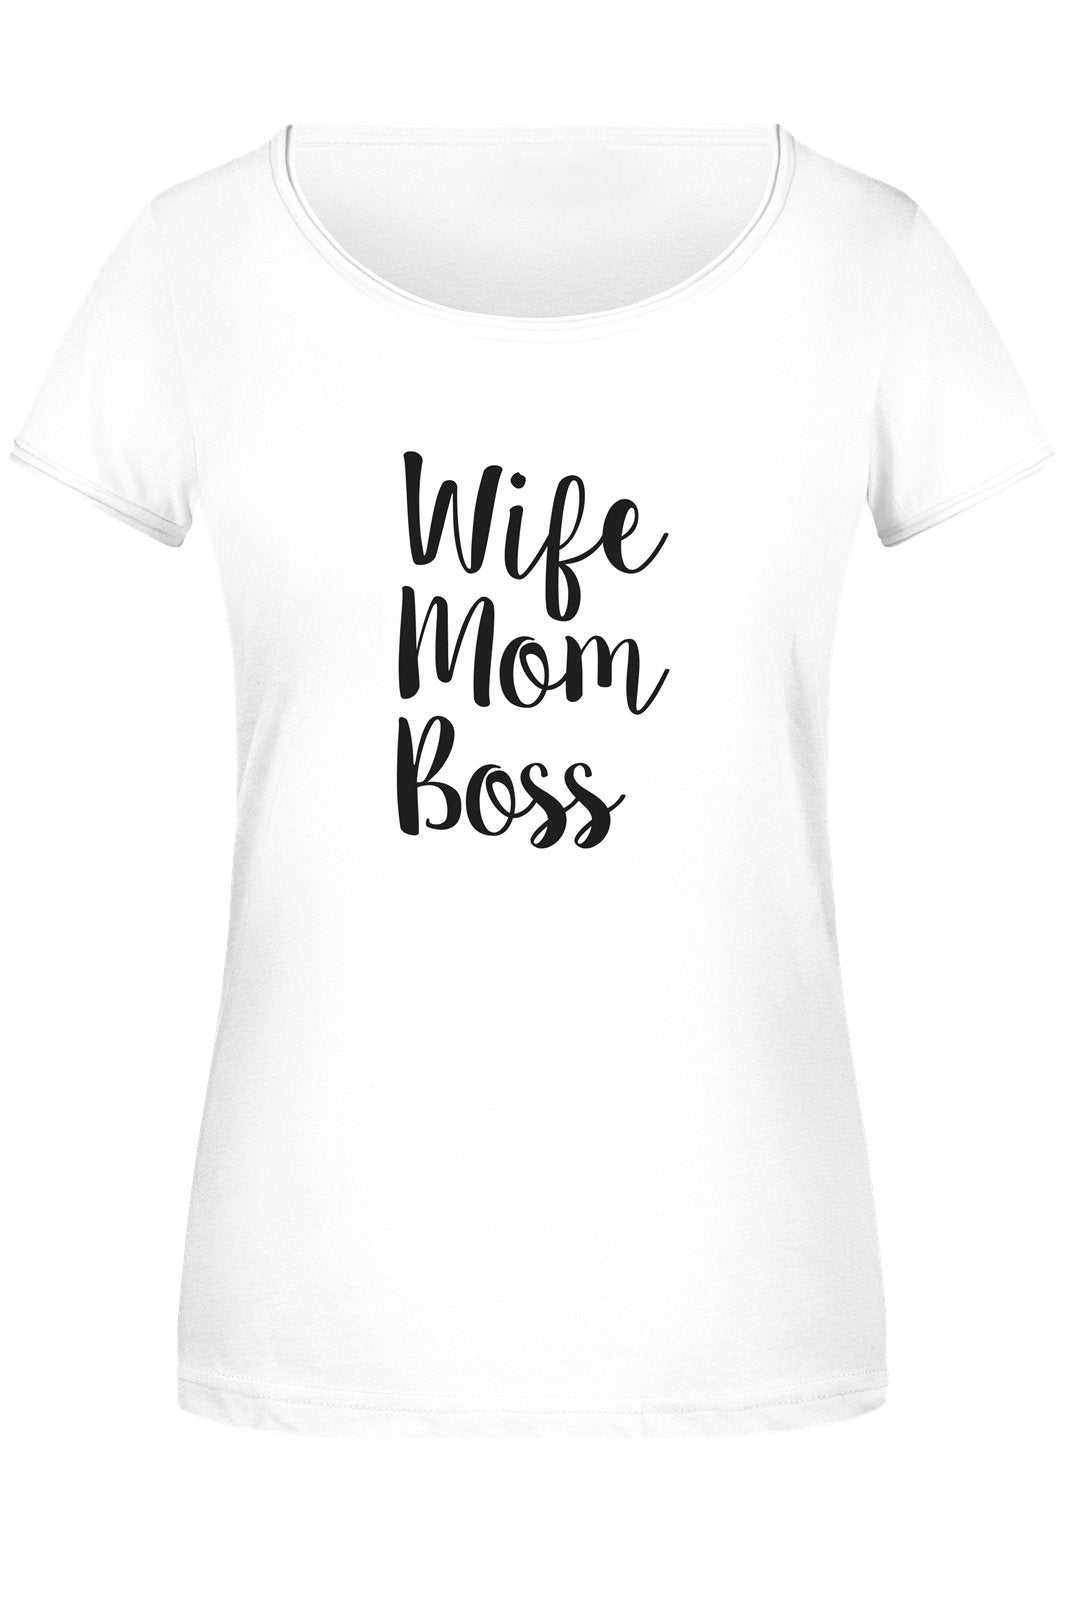 Bild: T-Shirt Damen - Wife Mom Boss Geschenkidee